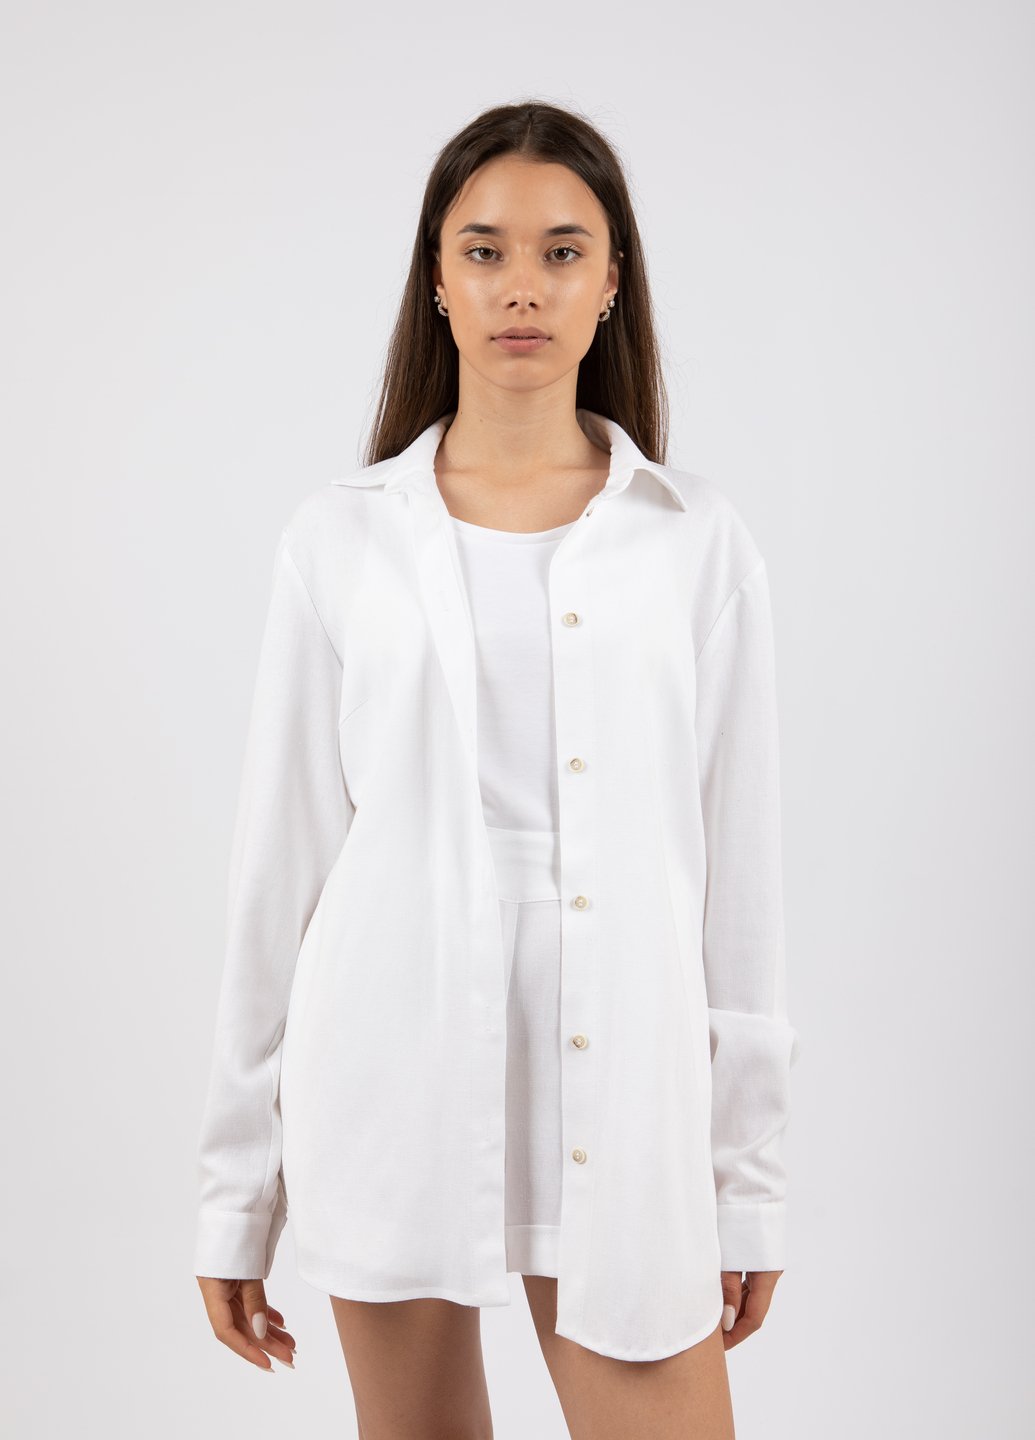 Купить Классическая льняная рубашка женская Merlini Прага 200000028 - Белый, 42-44 в интернет-магазине